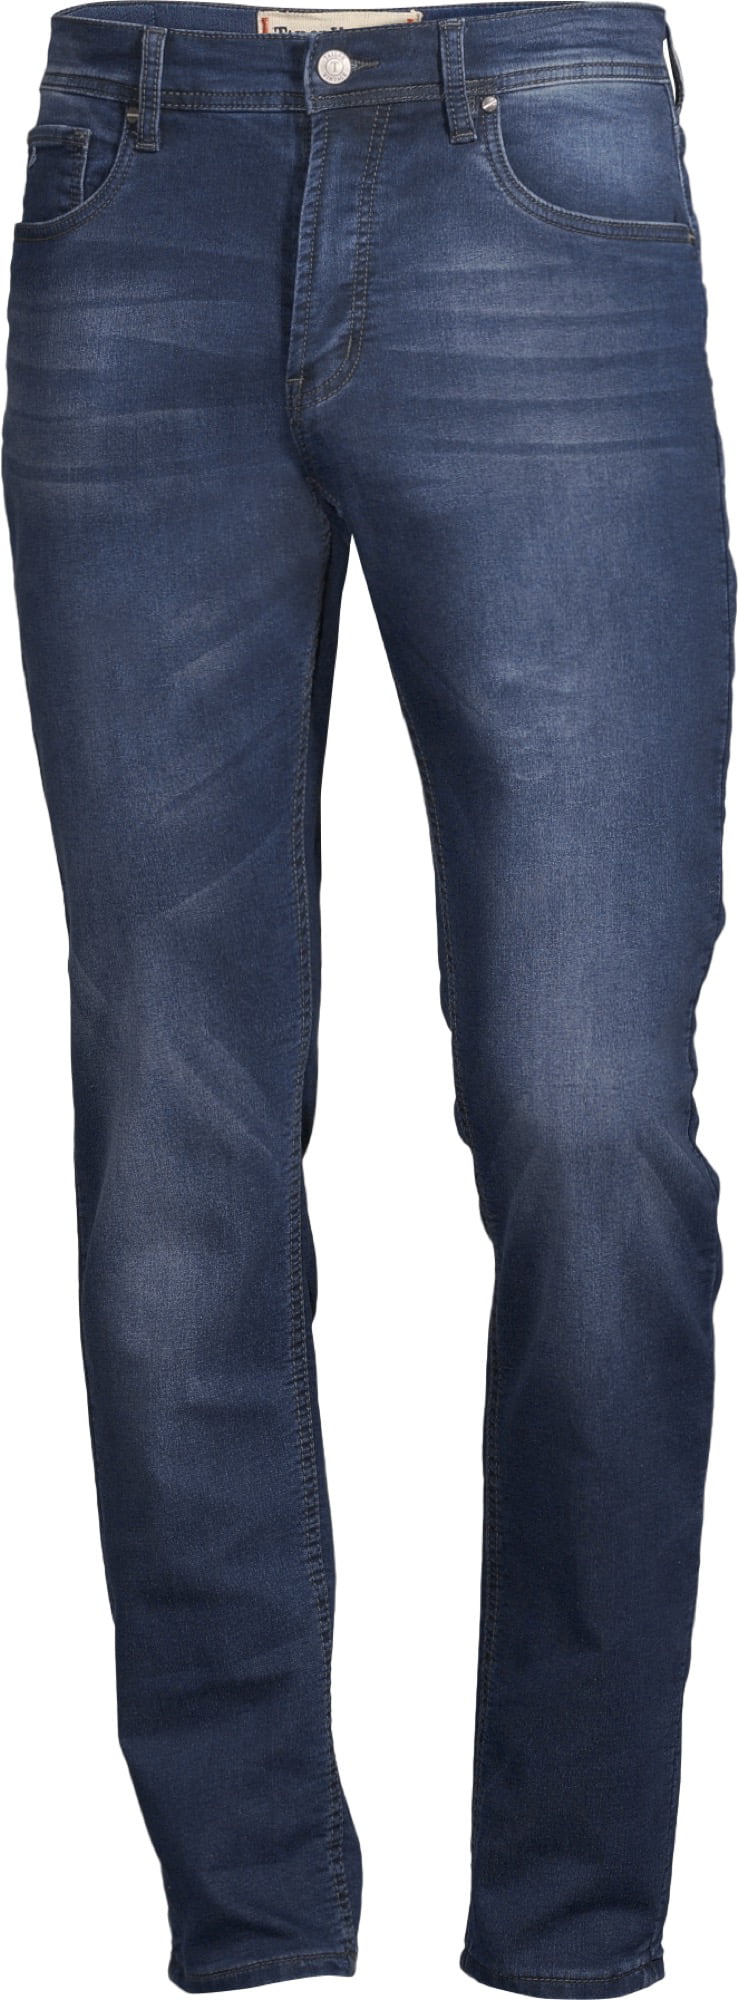 Tailor Vintage Jeans Canaan Slim Fit - Vintage Render